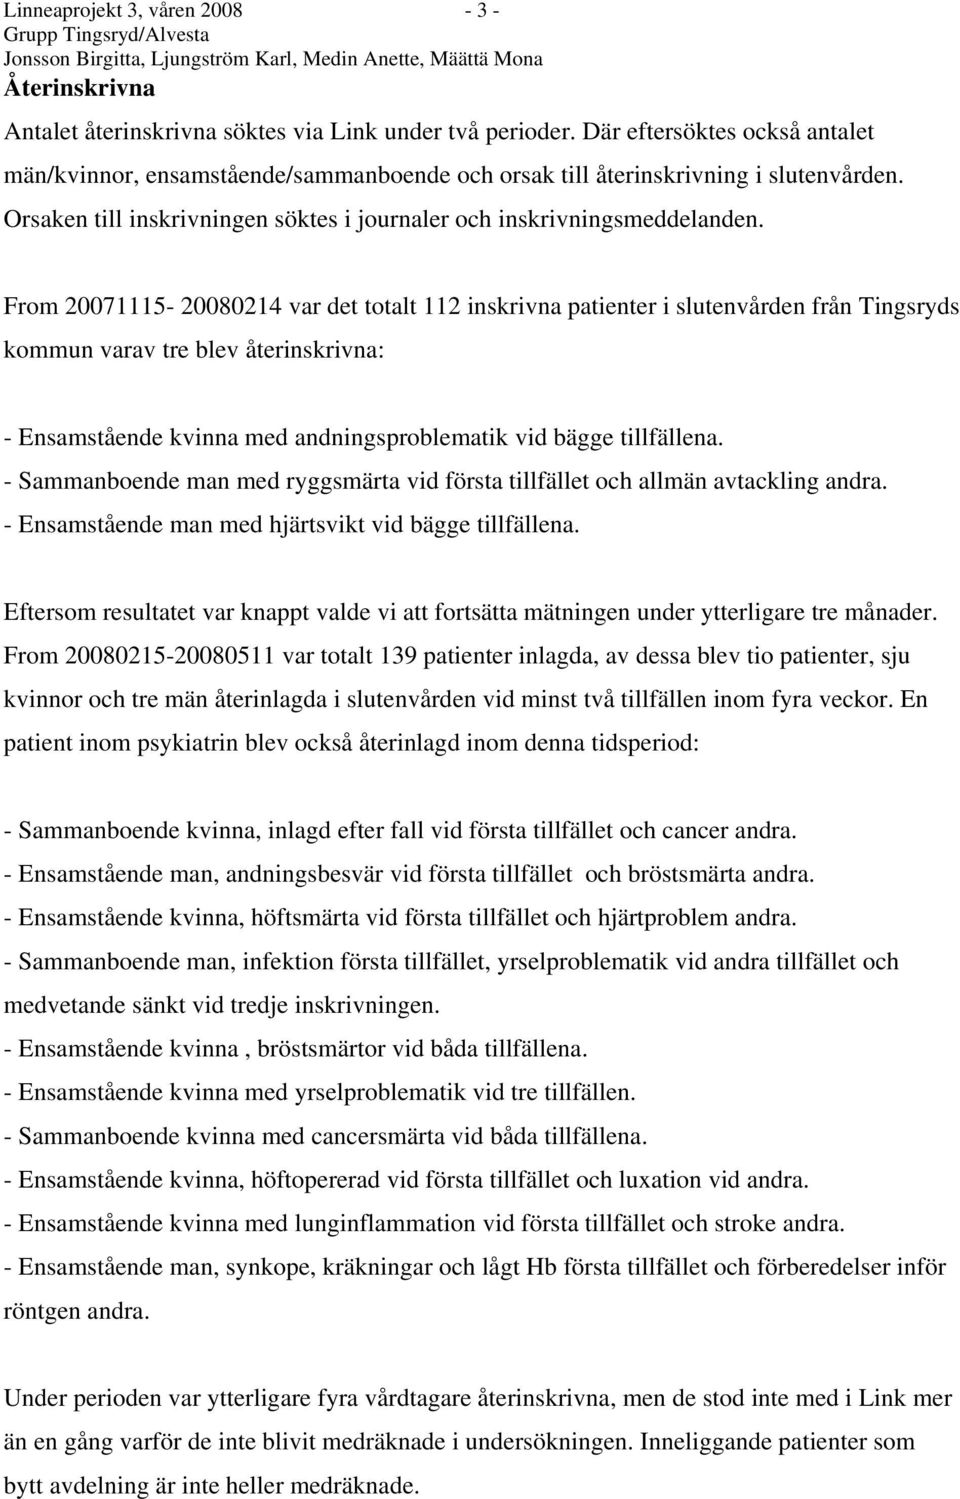 From 20071115-20080214 var det totalt 112 inskrivna patienter i slutenvården från Tingsryds kommun varav tre blev återinskrivna: - Ensamstående kvinna med andningsproblematik vid bägge tillfällena.